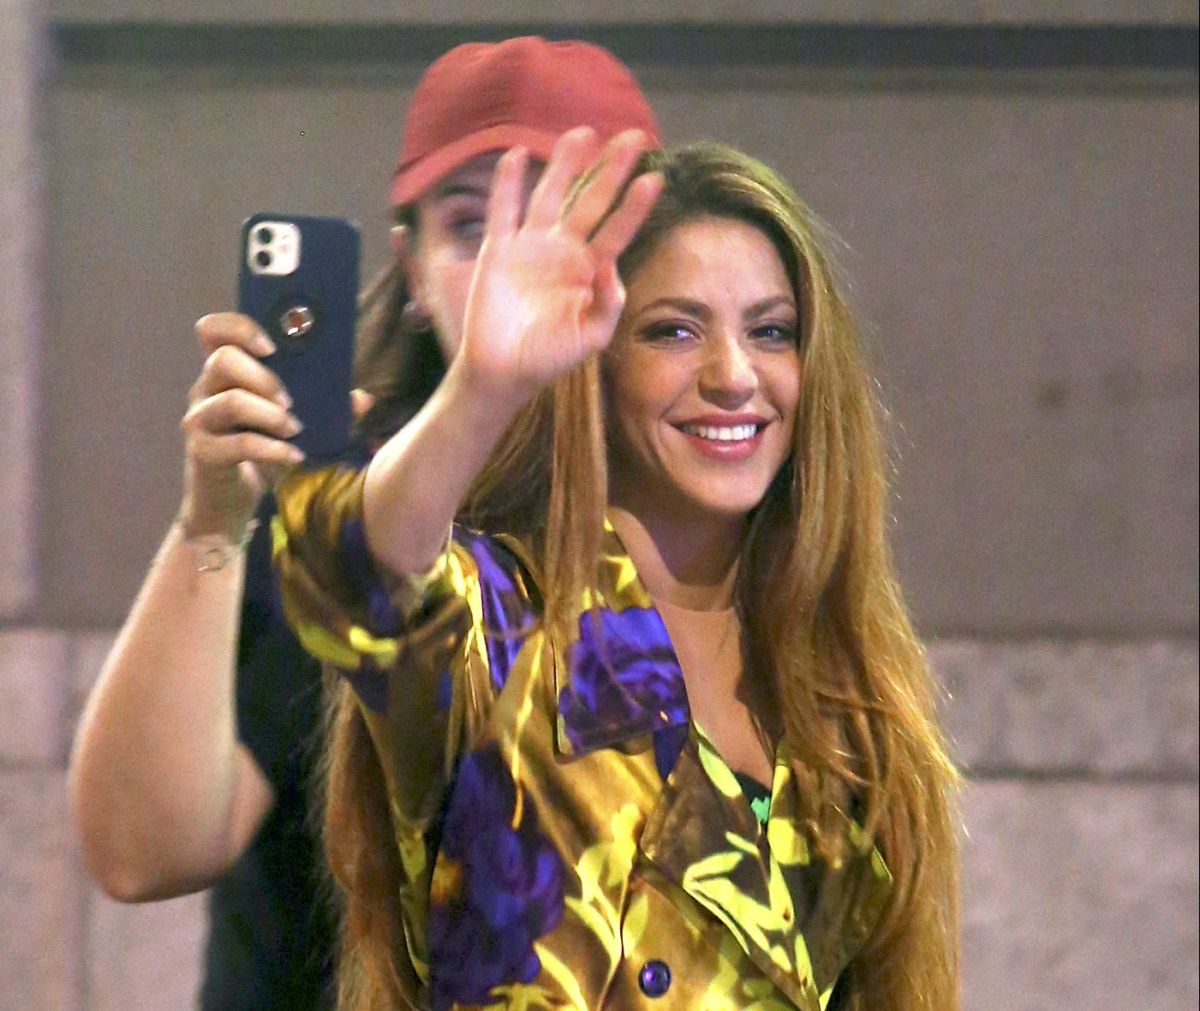 Shakira dice: "No fue culpa tuya", "Ni tampoco mía" en misteriosos mensajes en redes sociales.